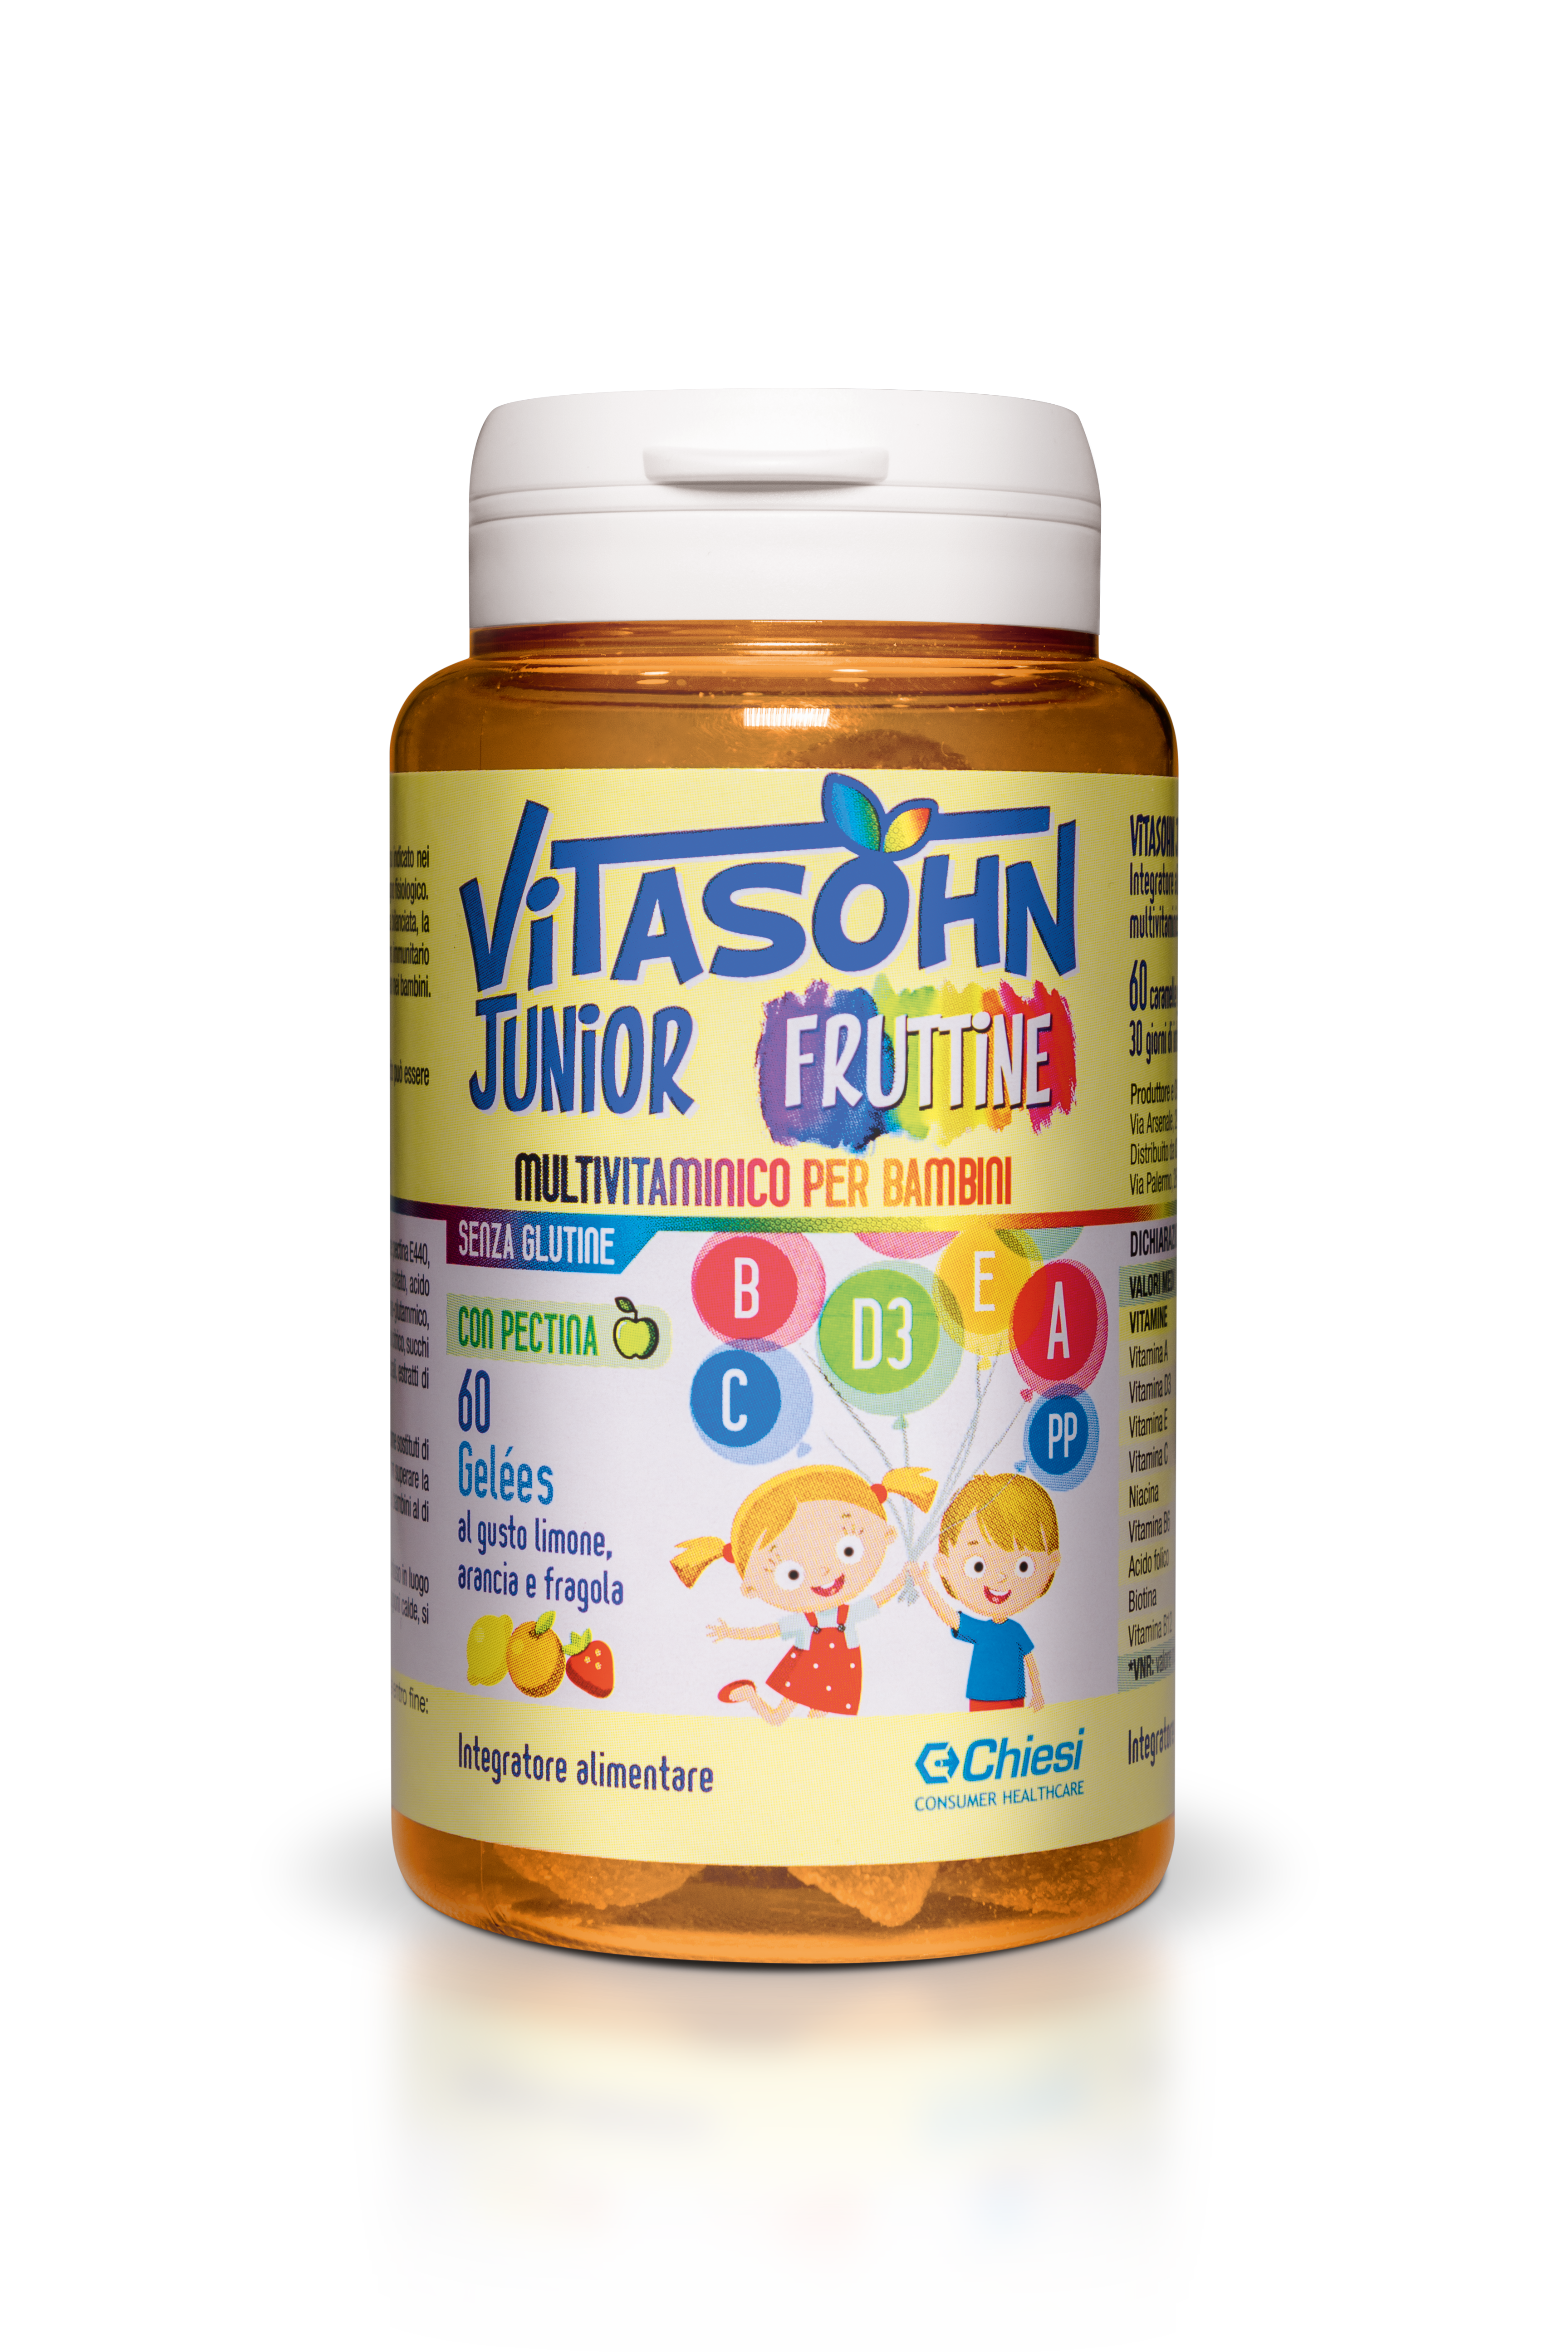 Immagine della confezione di Vitasohn junior fruttine, integratore di Chiesi Farmaceutici S.p.A.